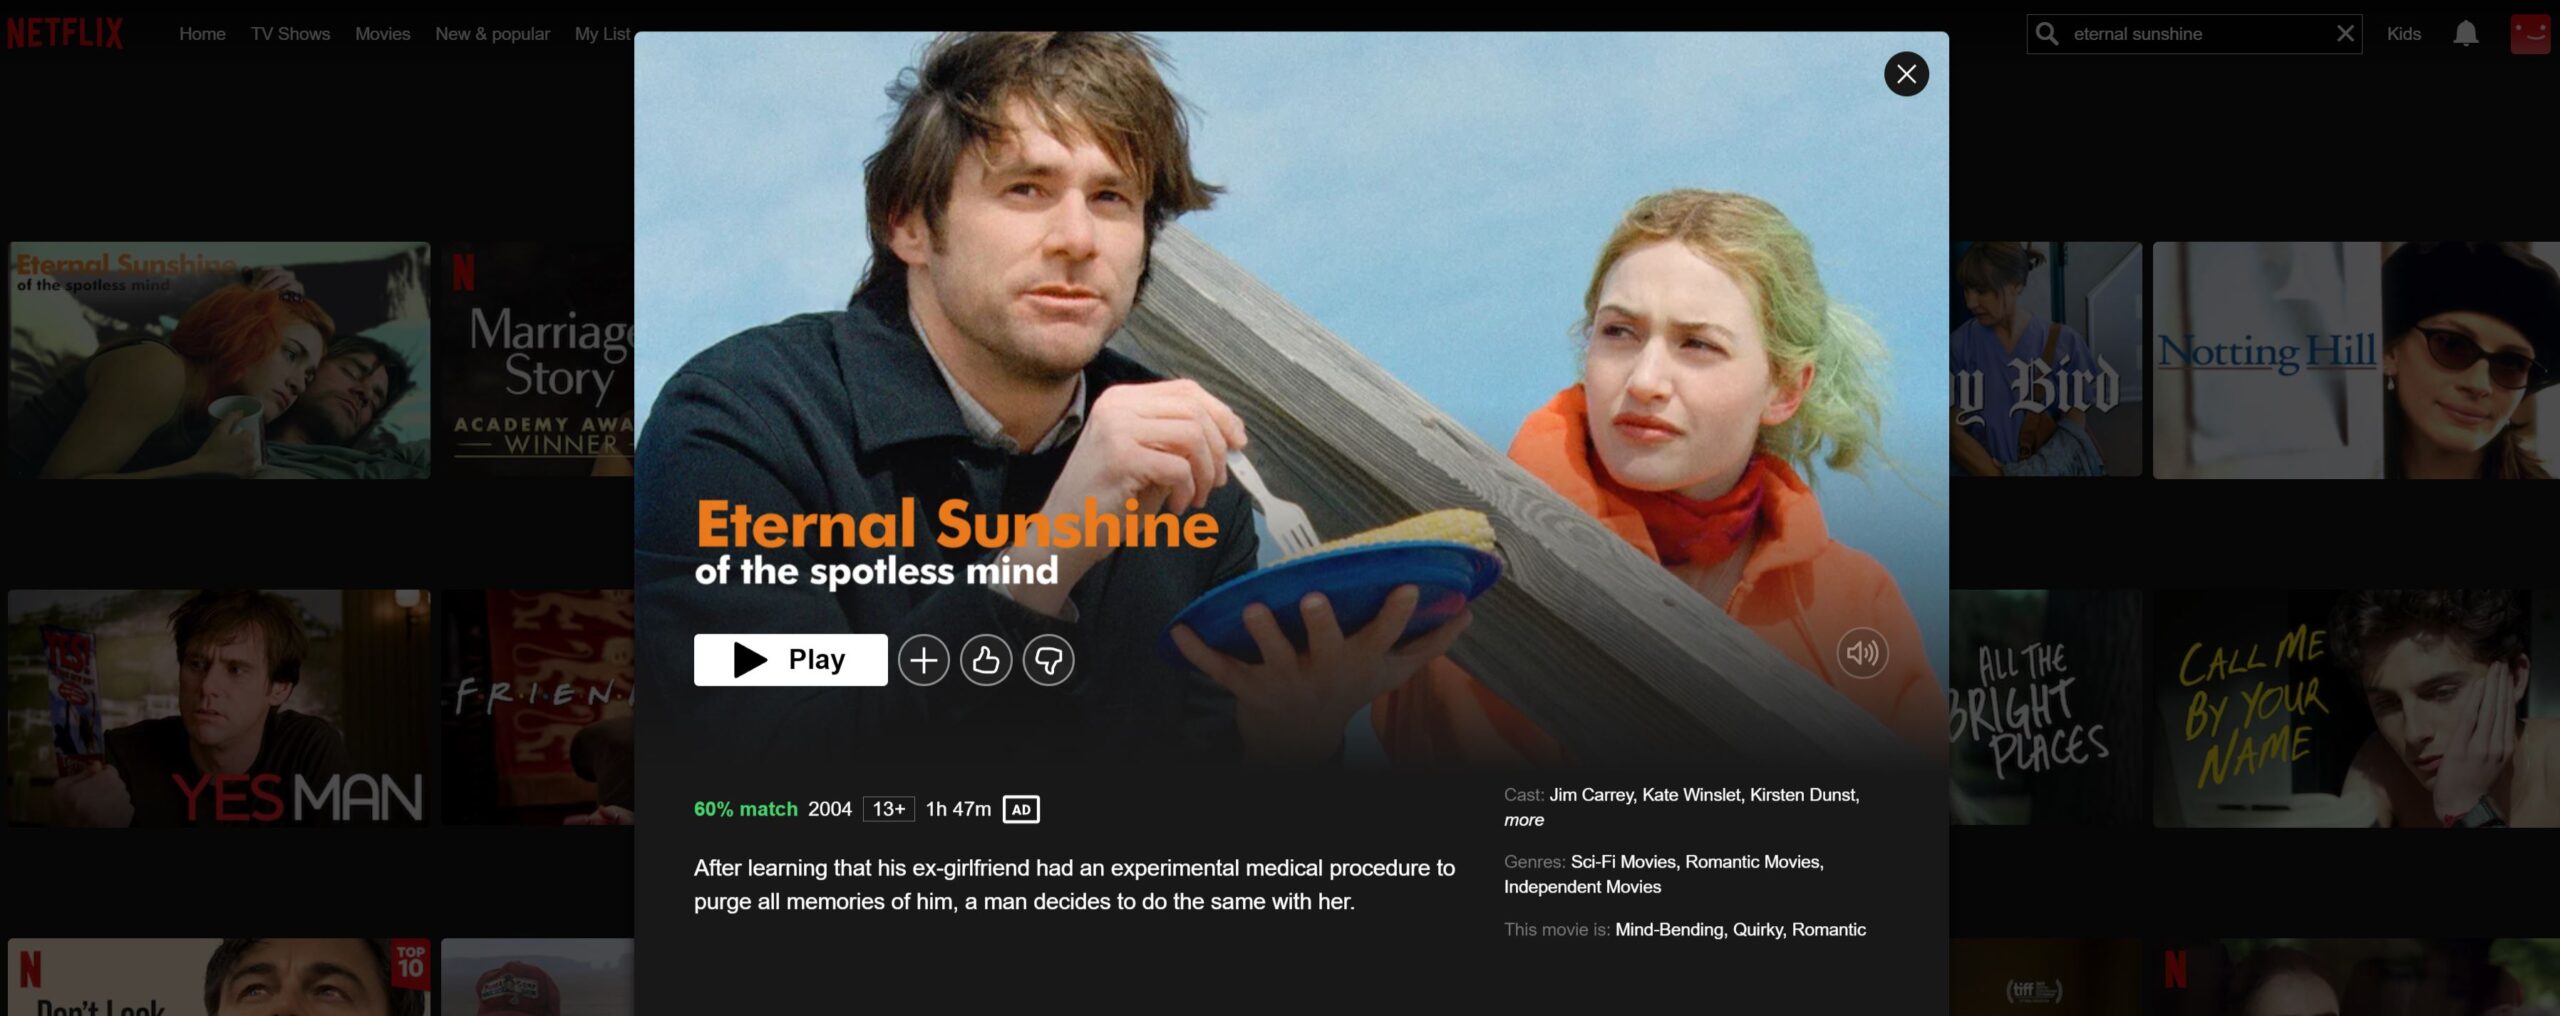 Eternal sunshine Netflix